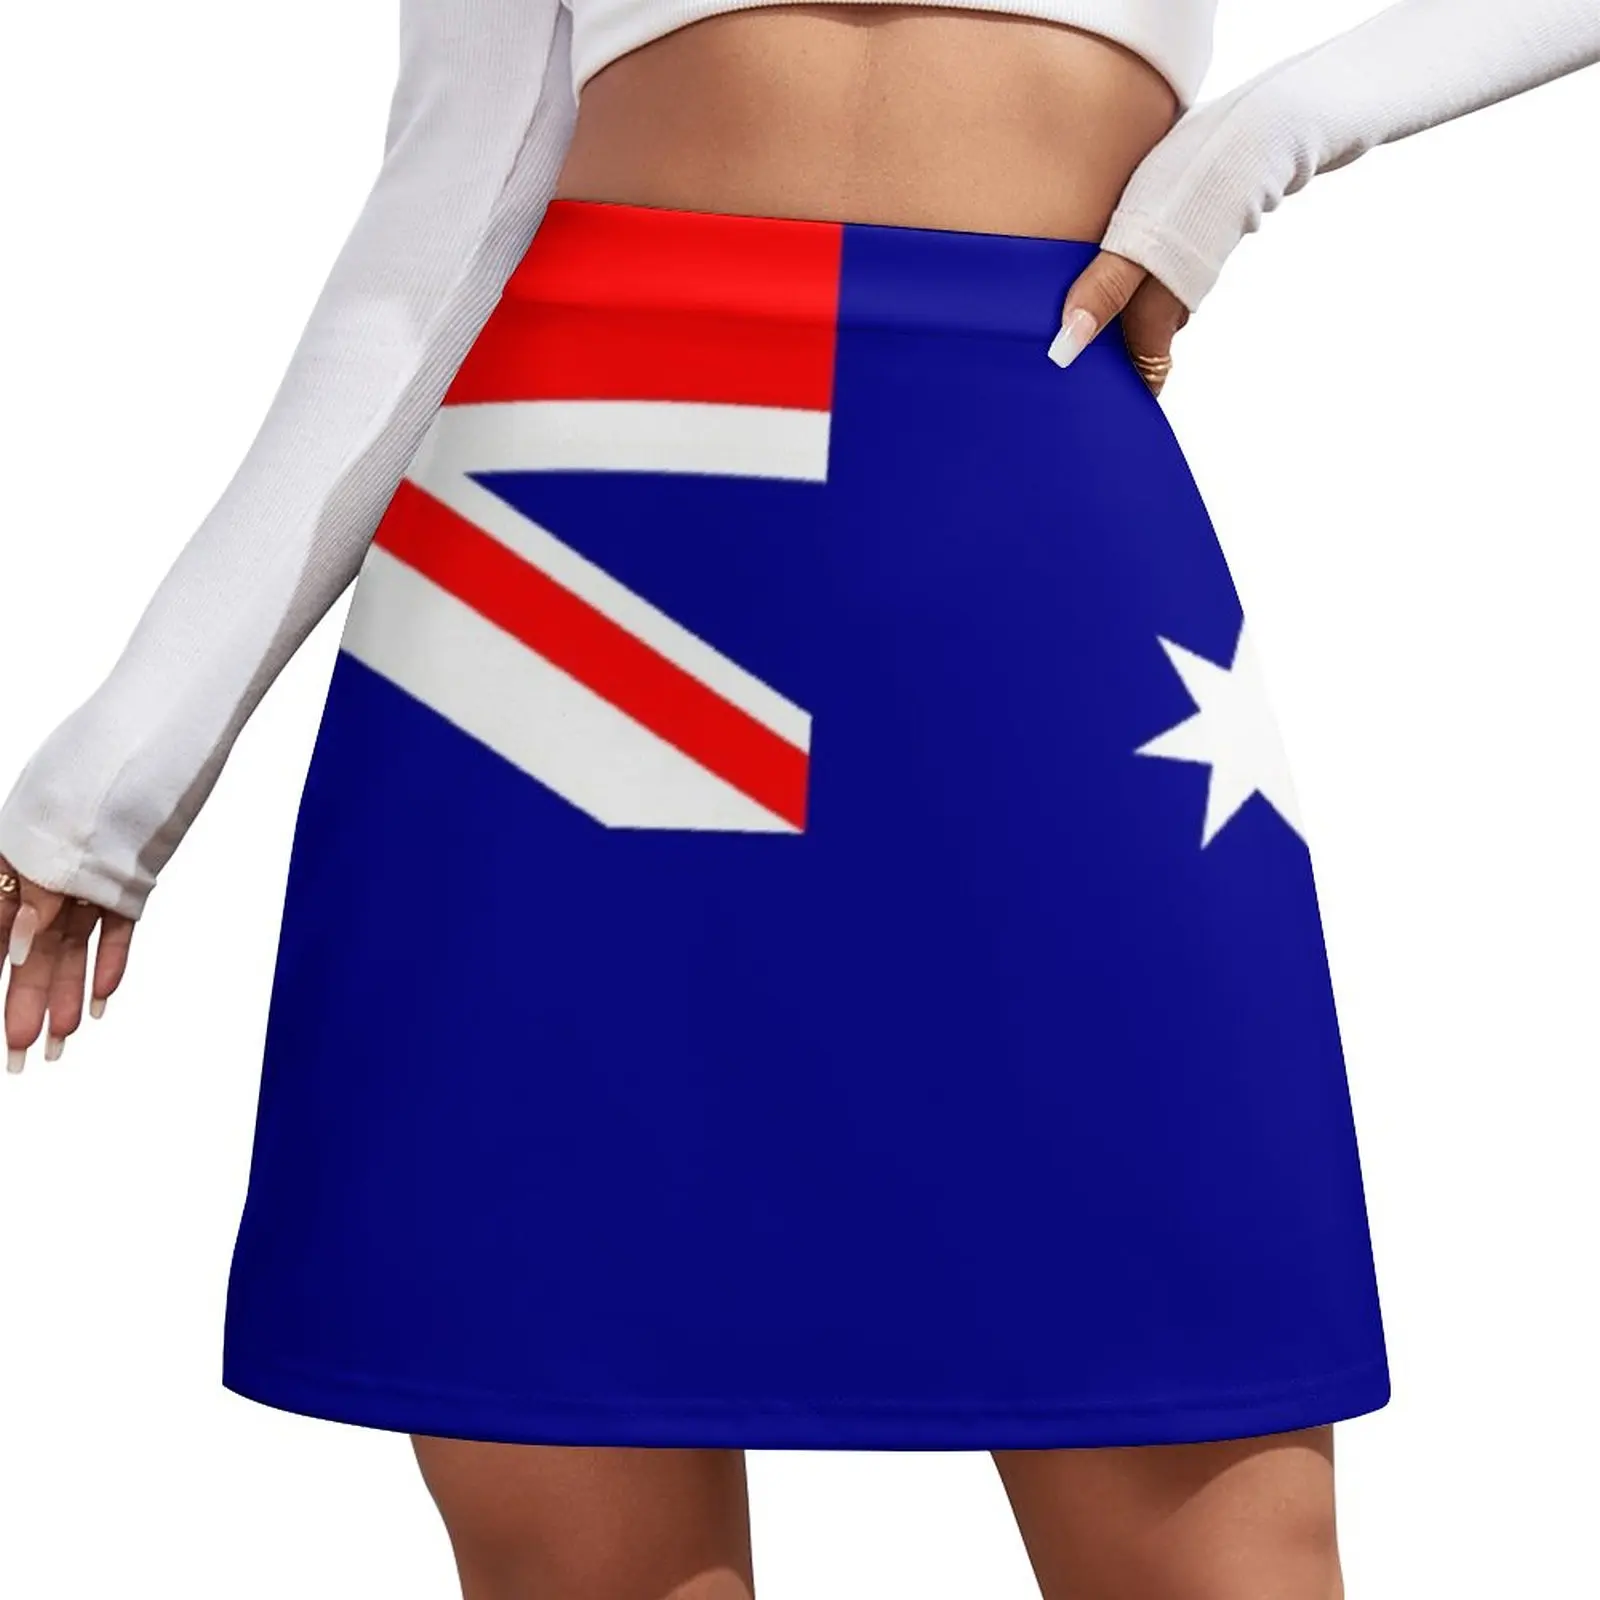 Flag of Australia - Australian Flag - I Love Australia Mini Skirt new in dresses Skirt for girls korean style